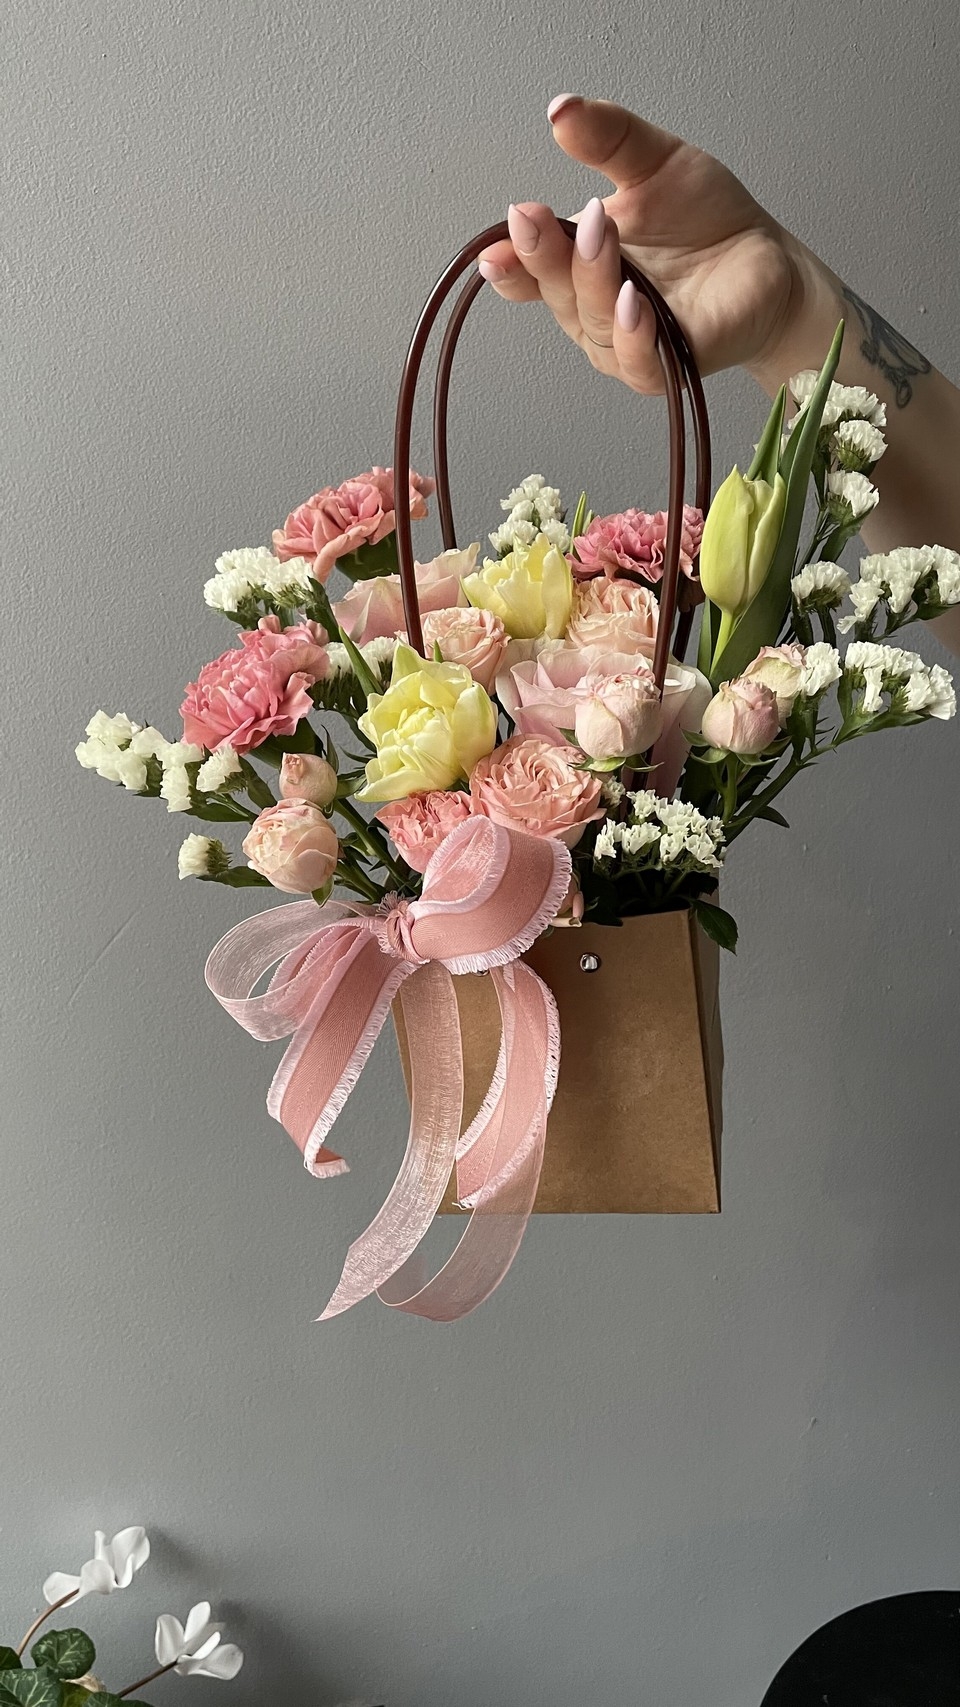 Купить красивые букеты из свежих цветов в интернет магазине УкраФлора❤️